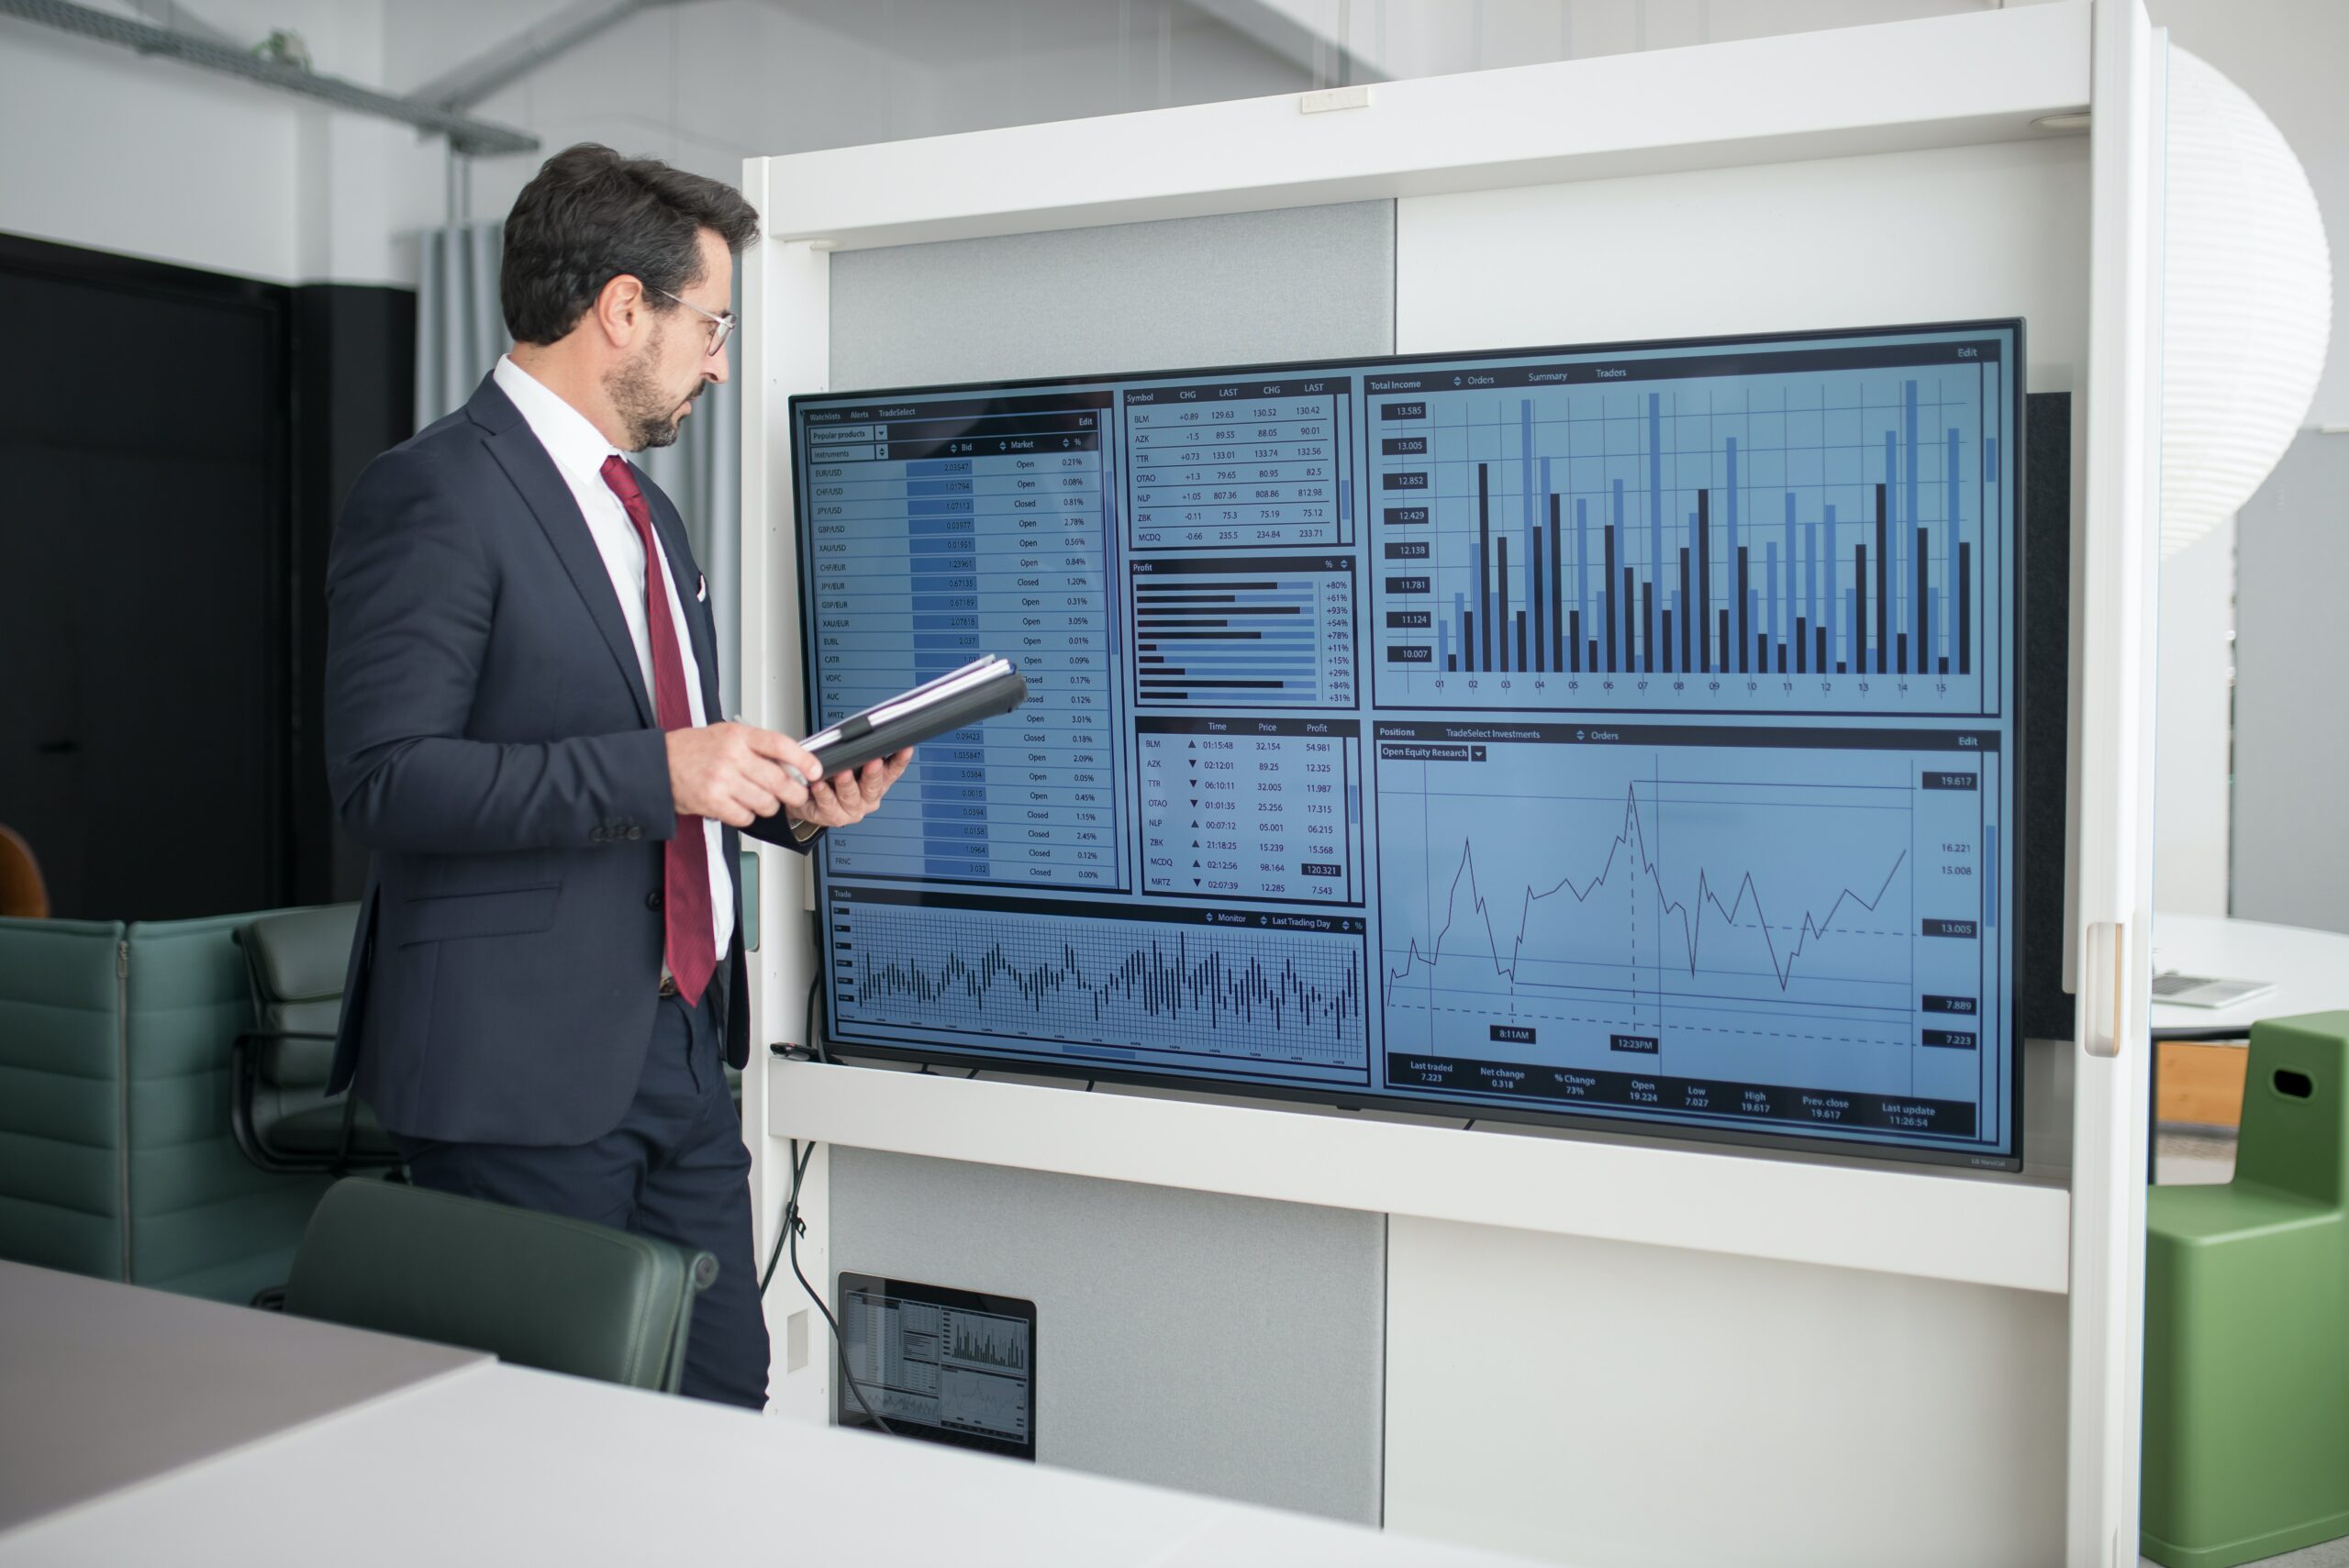 Mann im Anzug mit Dokumenten in der Hand und Blick auf einen großen Monitor gerichtet, auf dem mehrere Charts und Diagramme zu sehen sind.